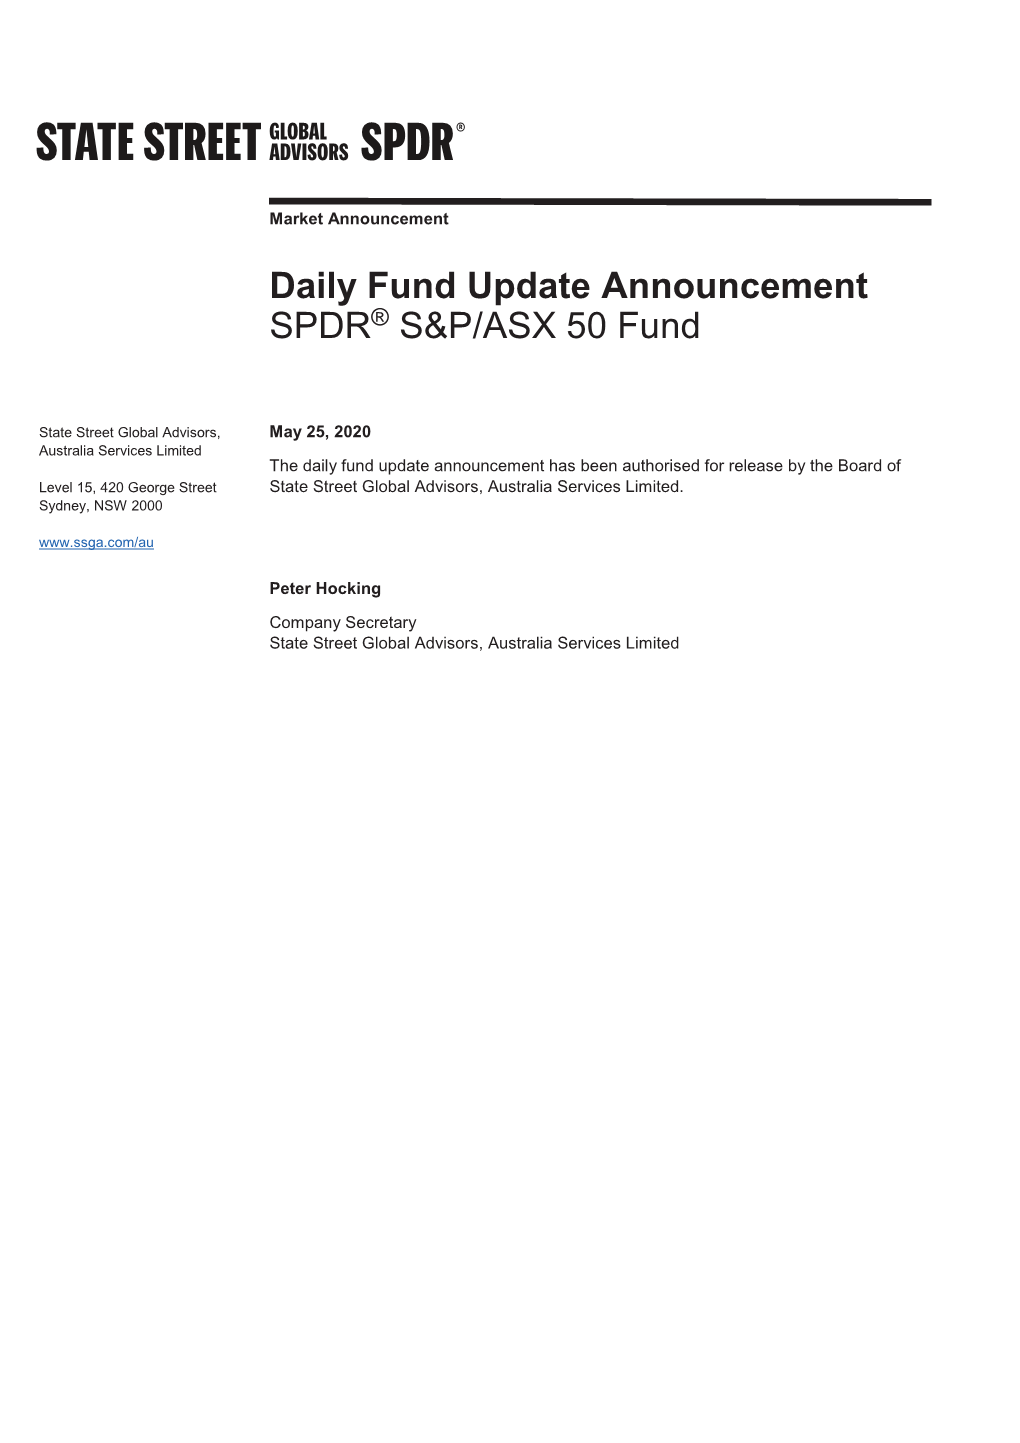 Daily Fund Update Announcement SPDR® S&P/ASX 50 Fund